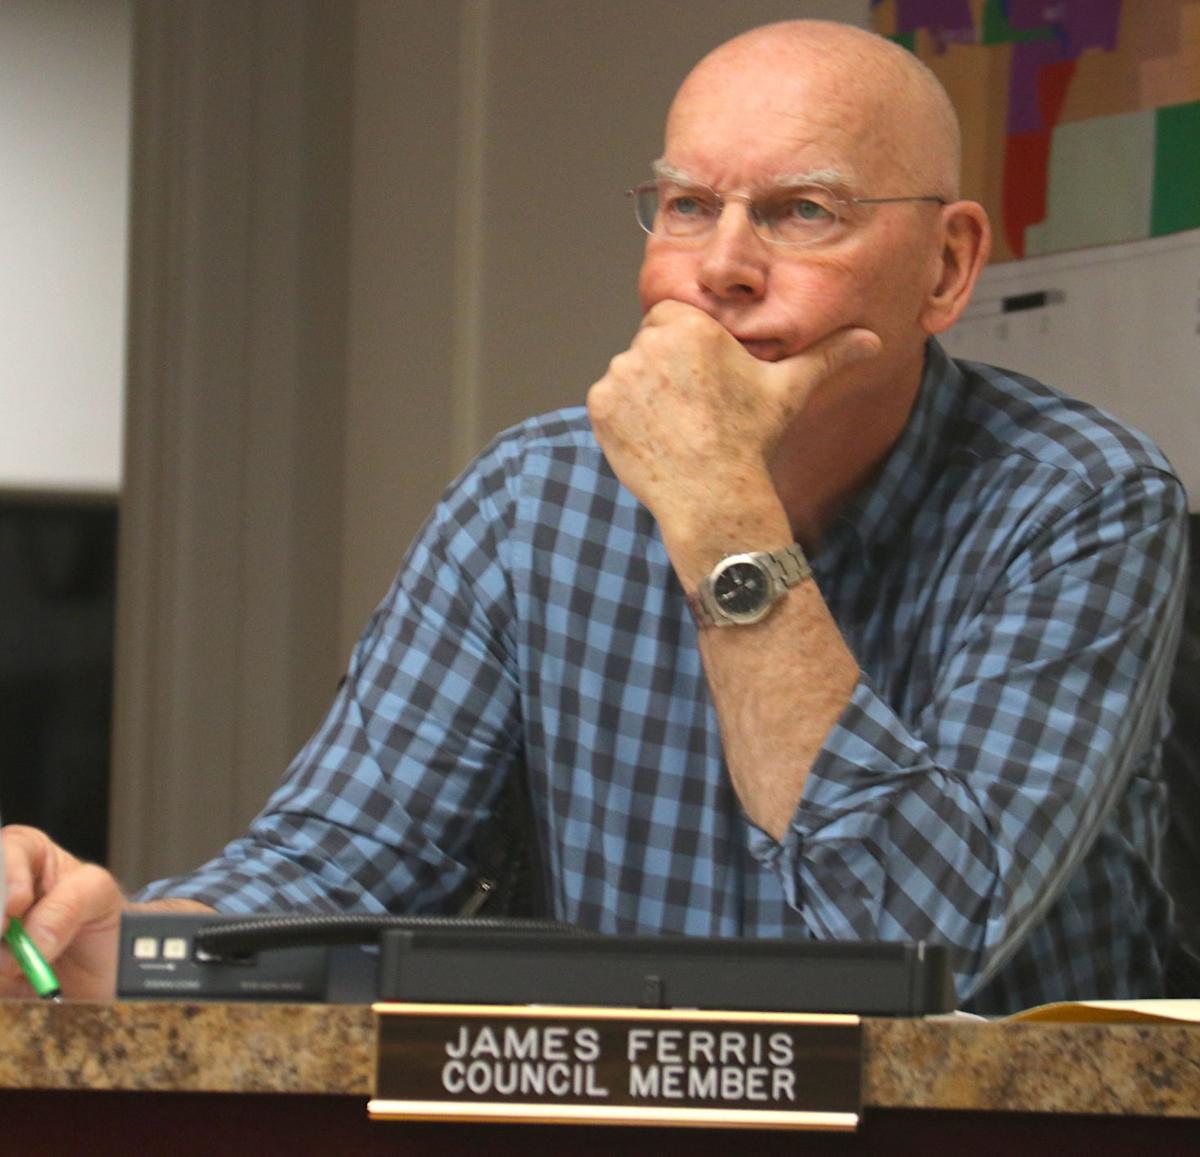 Councilor Jim Ferris